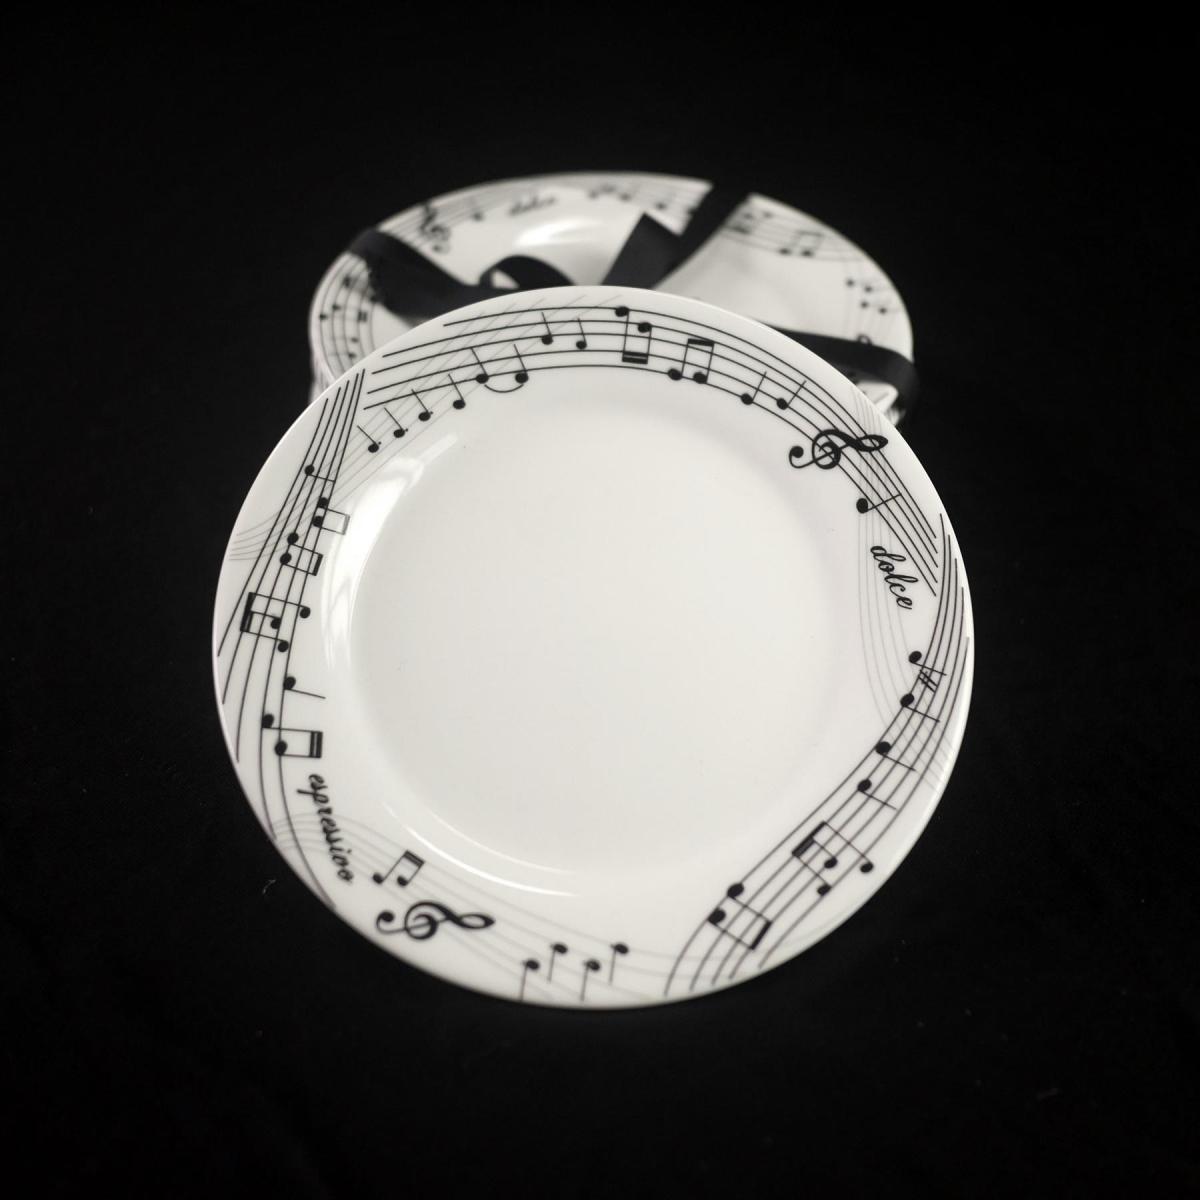 Picture of Jiallo EGV23-420 Ceramic Dessert Plate Set of 4 - Music Notes Design 6&apos;